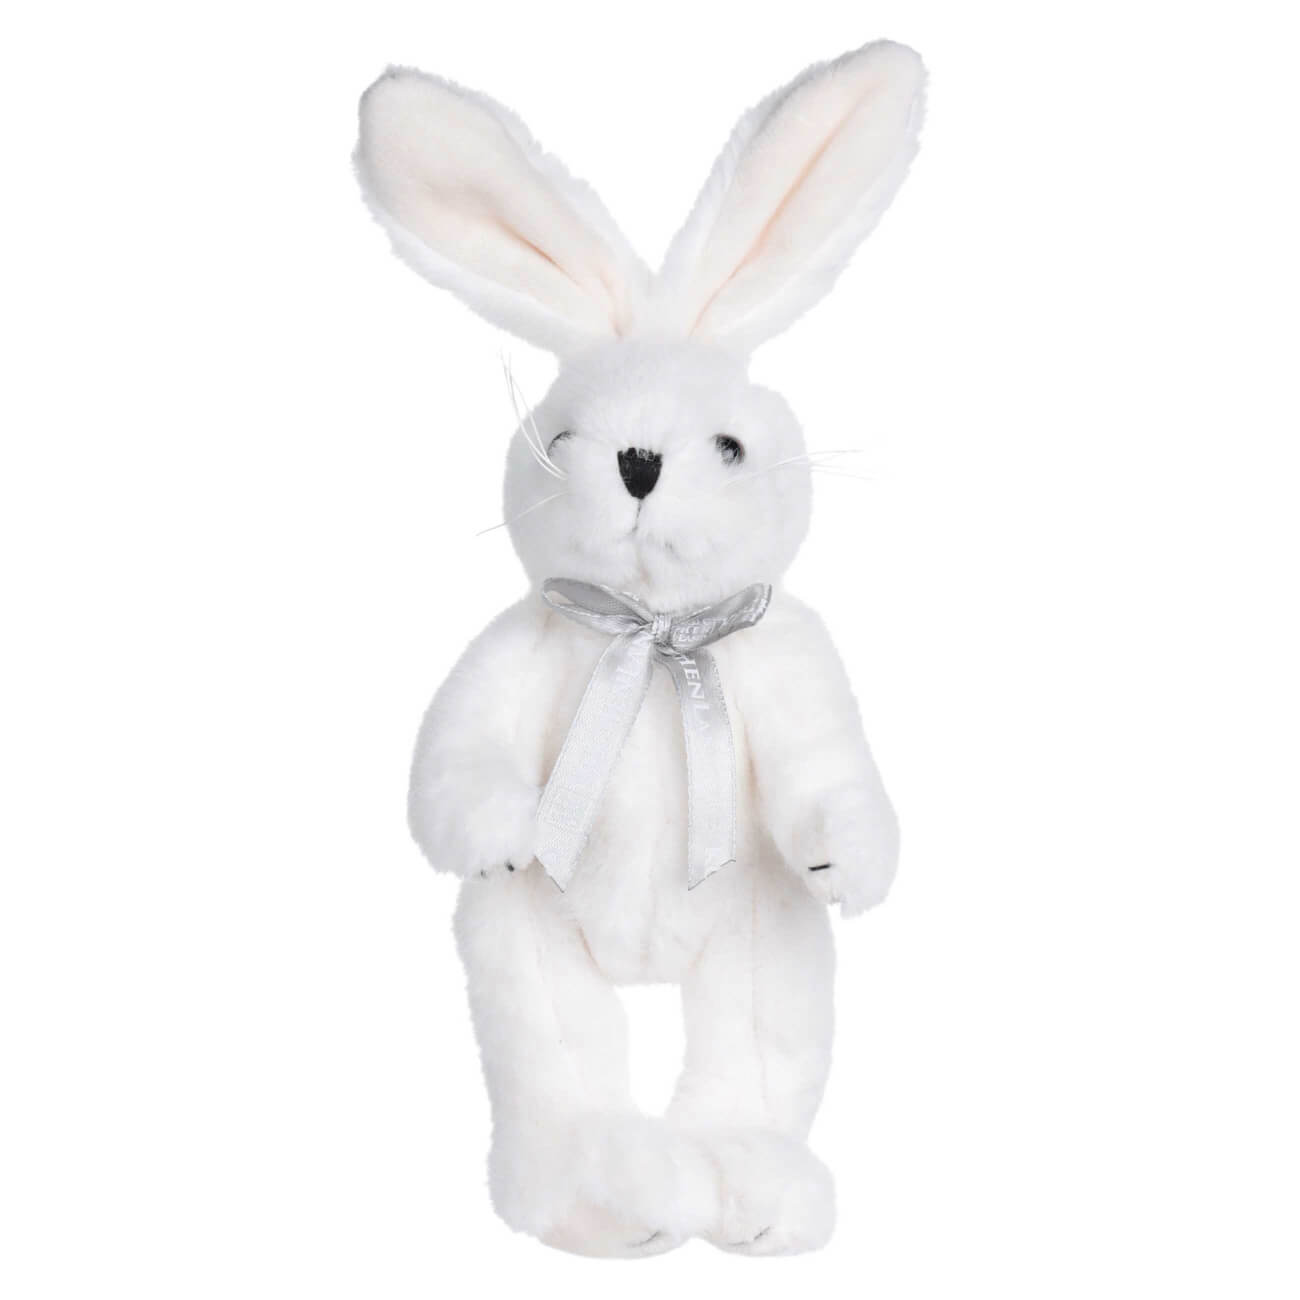 Игрушка, 20 см, мягкая, с подвижными лапами, полиэстер, белая, Кролик, Rabbit toy мягкая игрушка little friend мишка в шапке и шарфе голубой